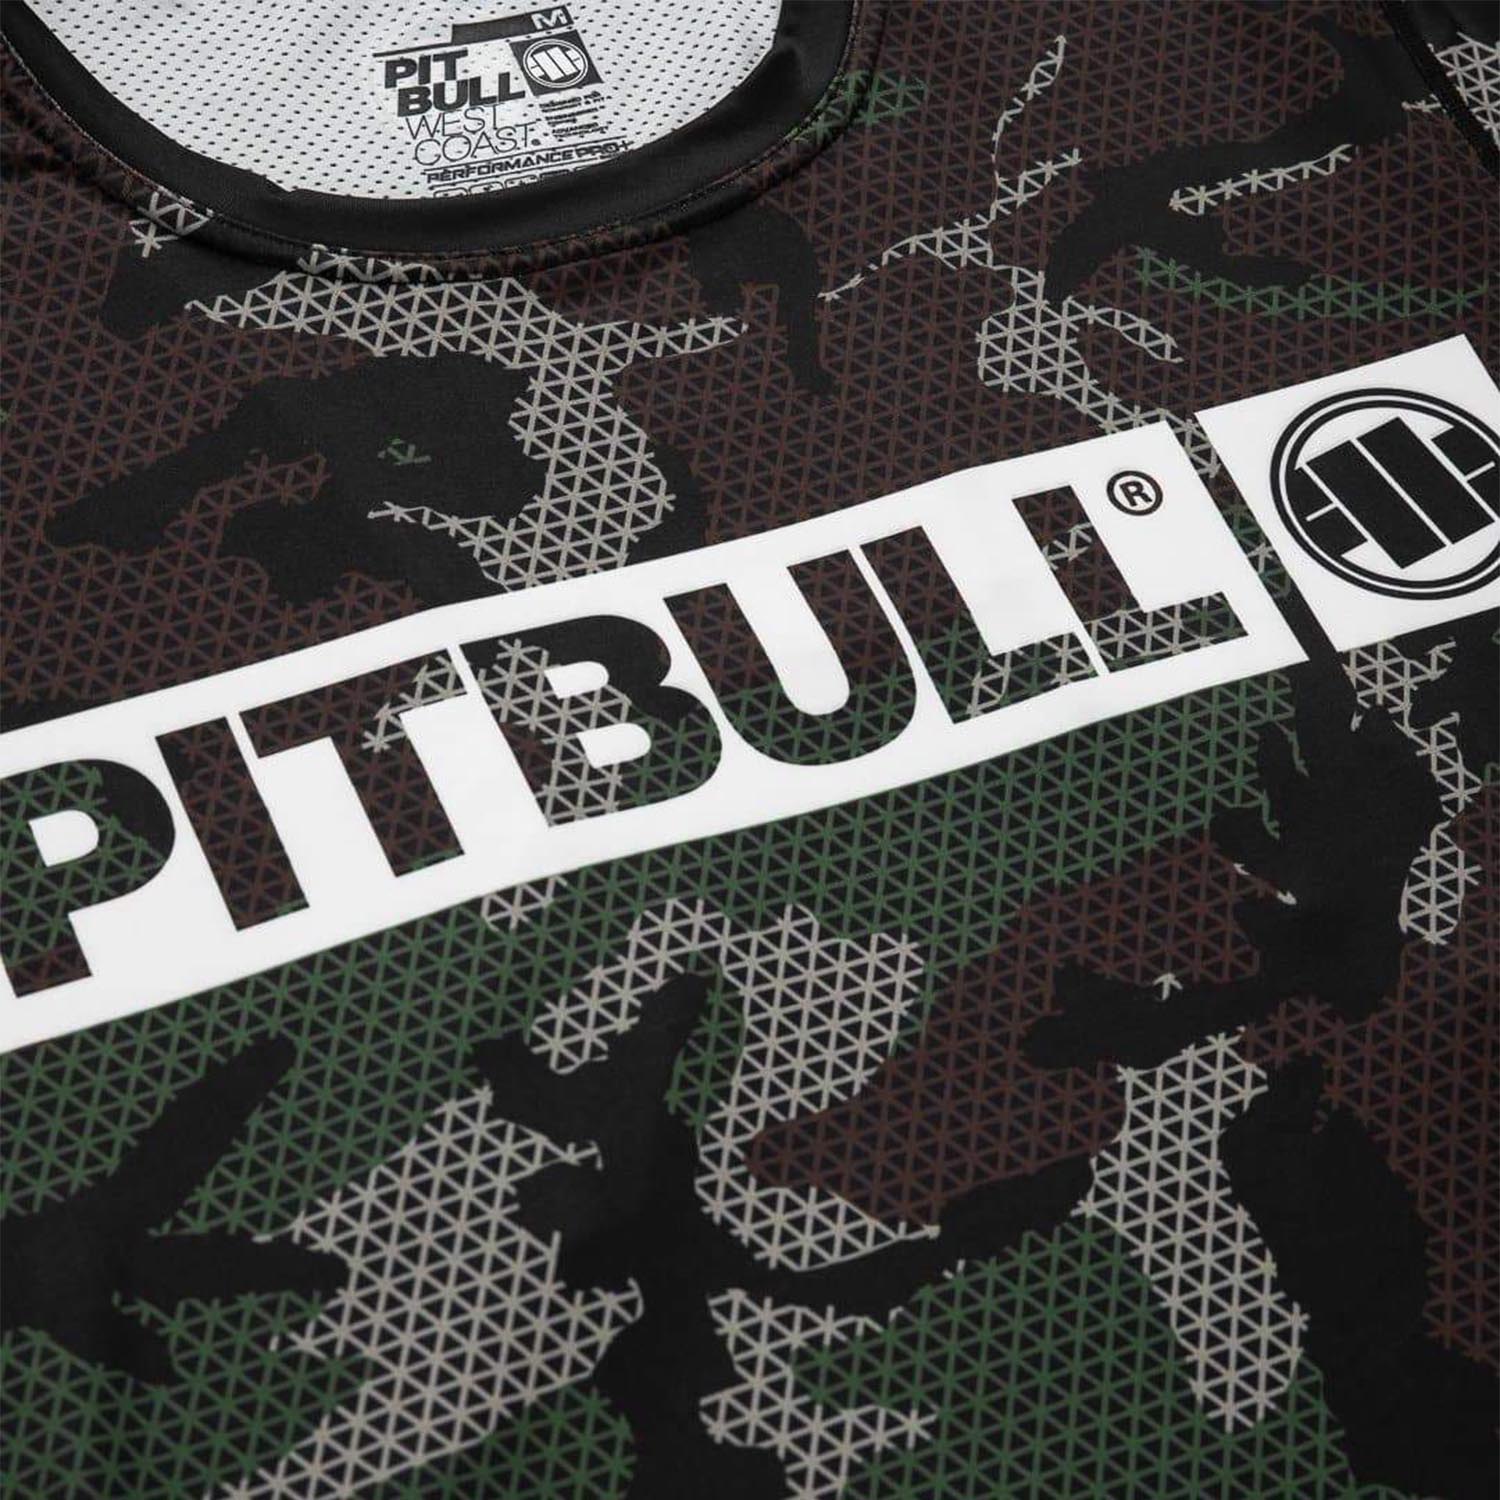 Pit Bull West Coast Fitness Shirt, Mesh Net Hilltop, camo-grün, XXXL